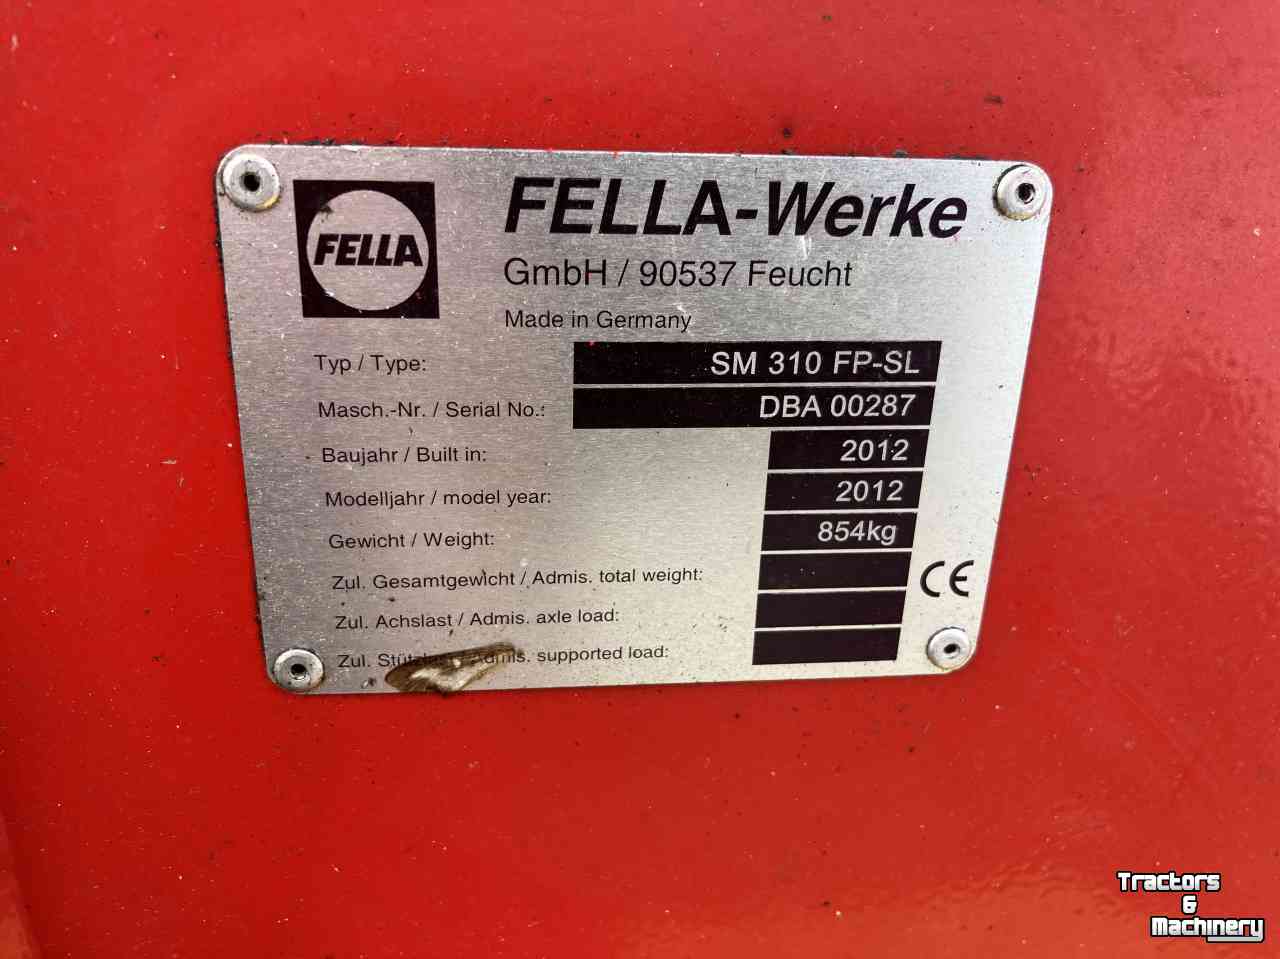 Mähwerk Fella Sm 310 fp sl